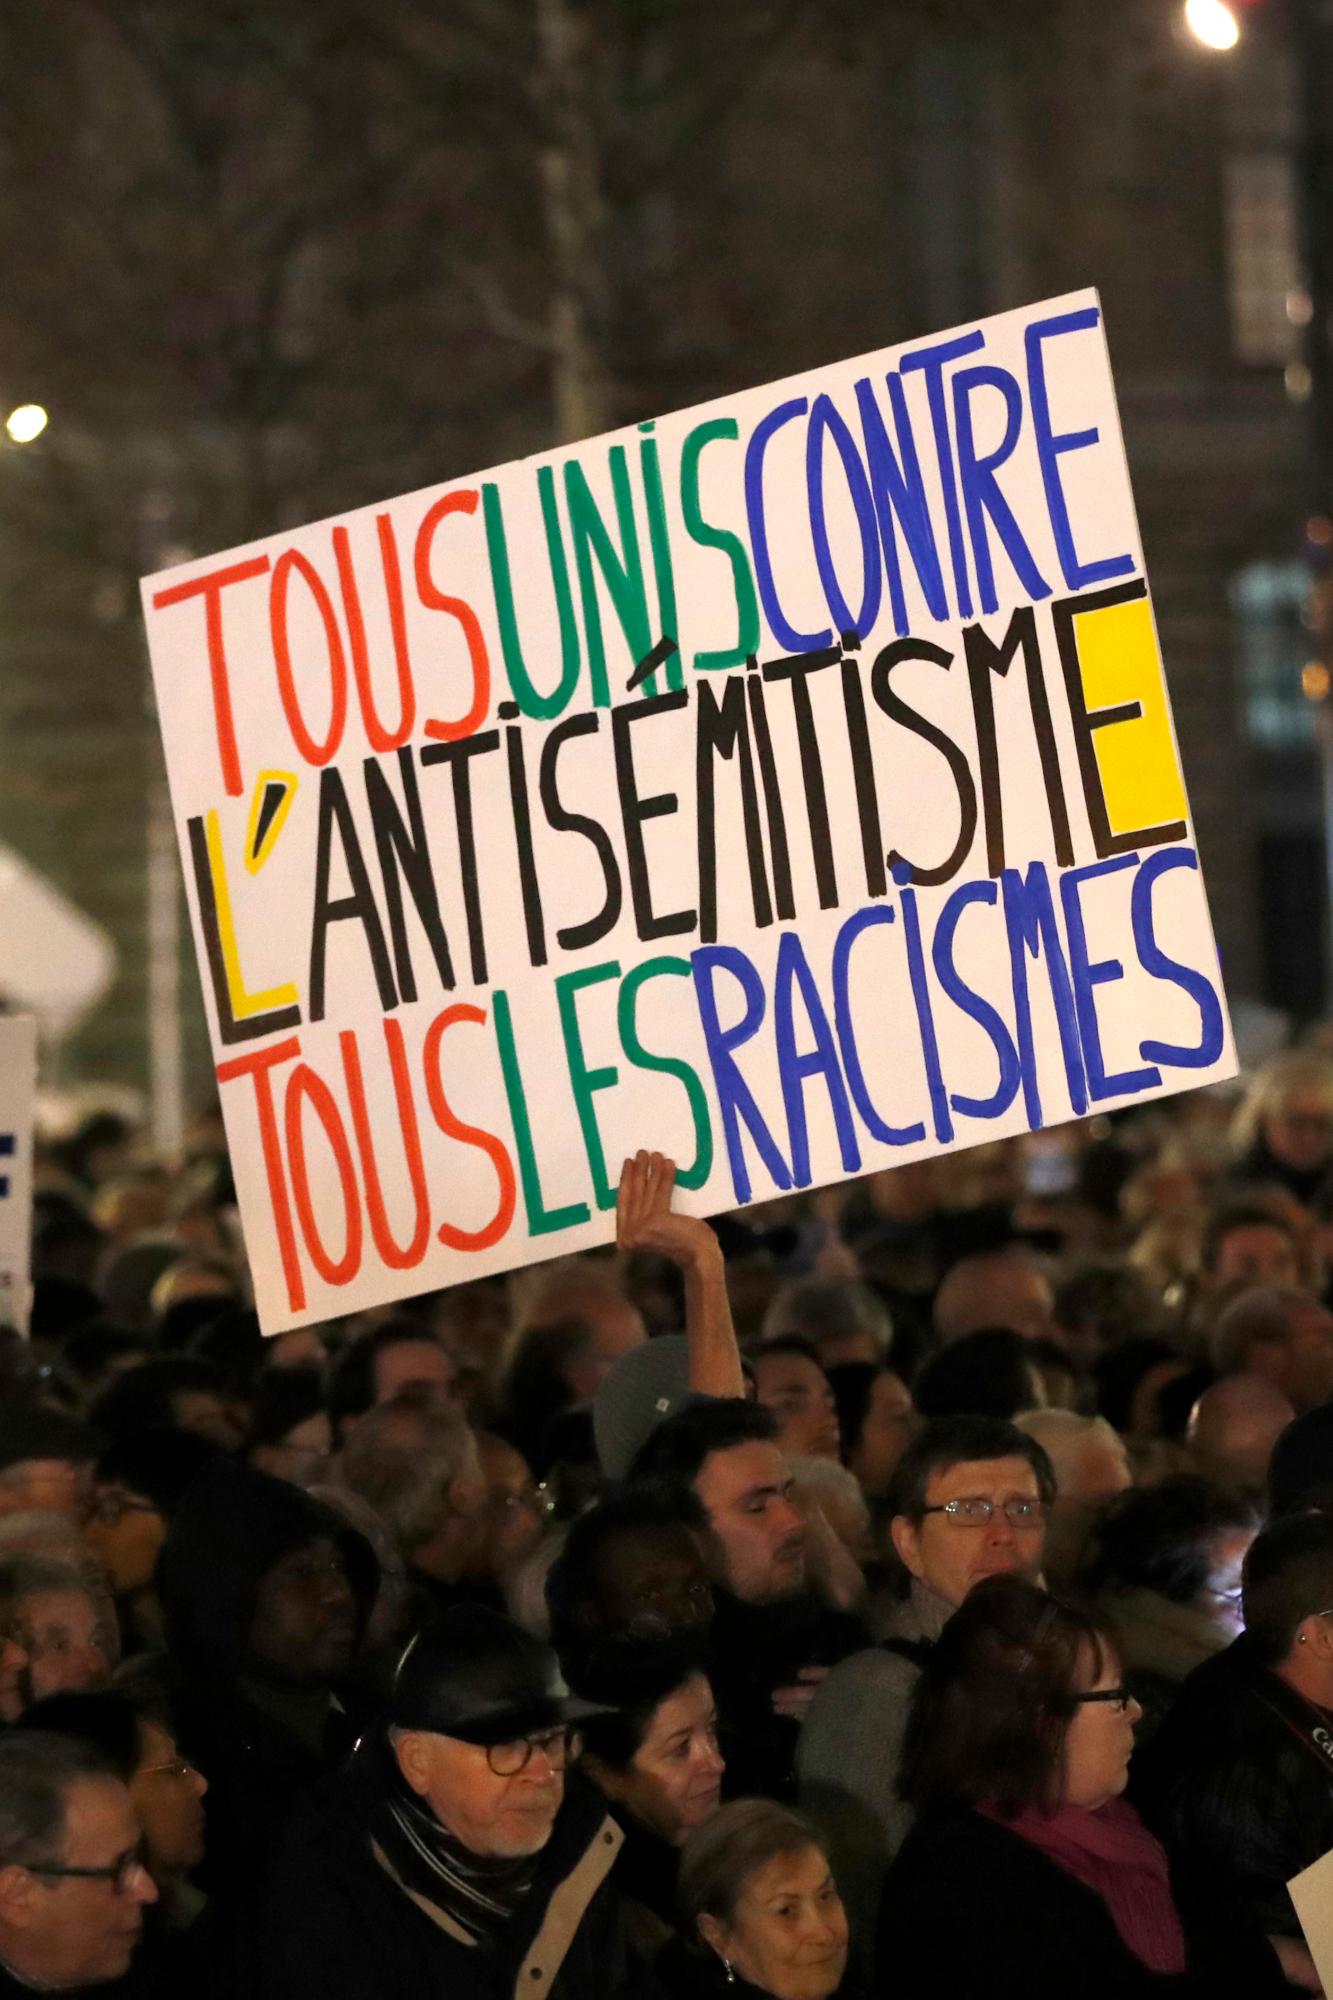 La gente se reúne en la plaza de la República para protestar contra el antisemitismo en París, Francia. El cartel dice: Todos juntos contra el antisemitismo y el racismo. En París y en docenas de otras ciudades francesas, ciudadanos comunes y funcionarios de todo el espectro político se prepararon el martes para marchar y unirse contra el antisemitismo, luego de una serie de actos antisemitas que conmocionaron a la nación.